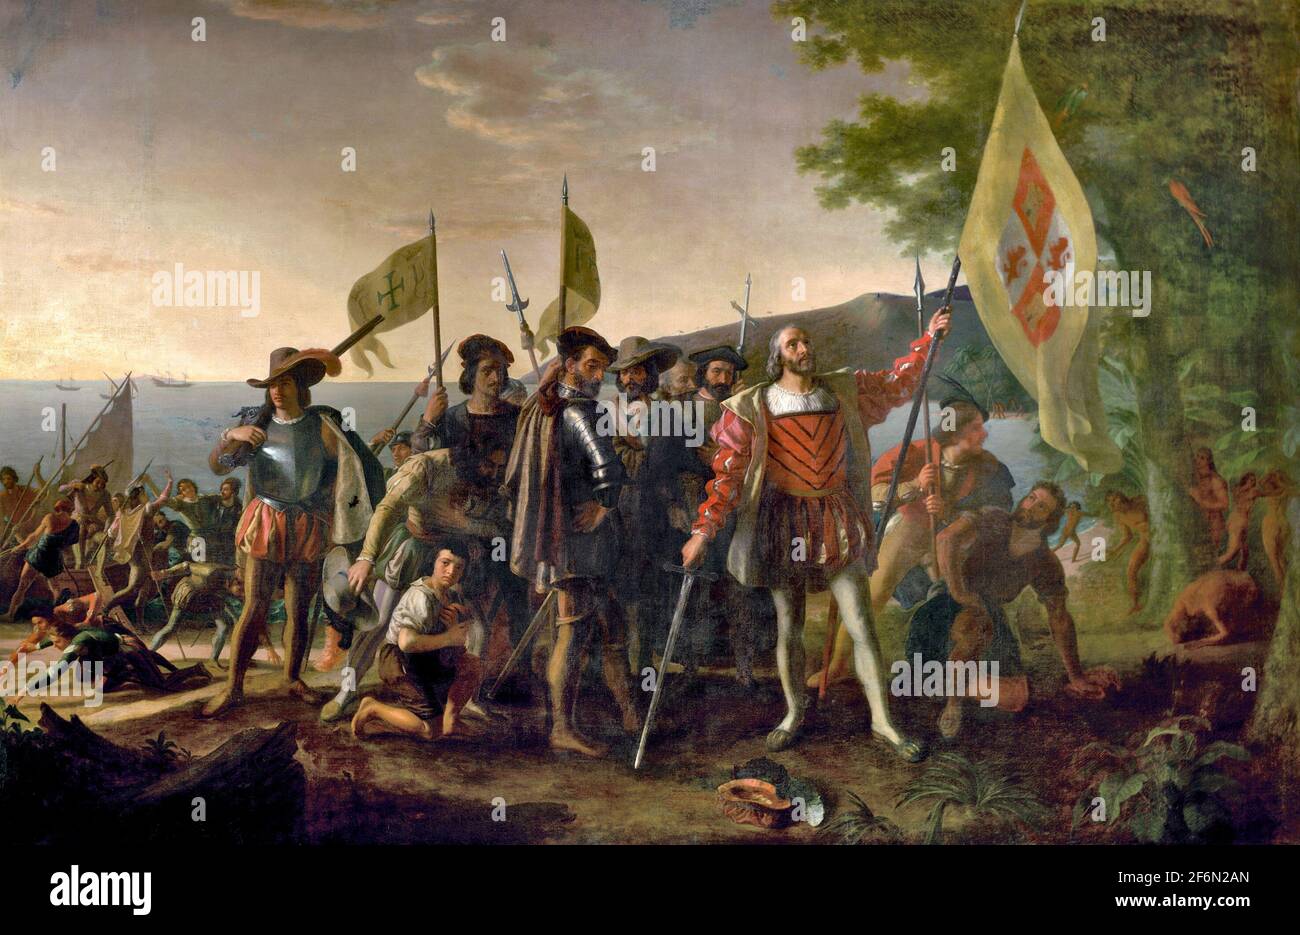 Landung von Kolumbus - Christopher Columbus wird dargestellt, wie er am 12. Oktober 1492 in Westindien landete, auf einer Insel, die die Einheimischen Guanahani nannten und den er San Salvador nannte. Er hebt das königliche Banner, behauptet das Land für seine spanischen Gönner, und steht barfuß, mit seinem Hut zu seinen Füßen, zu Ehren der Heiligkeit des Ereignisses. Die Kapitäne der Niña und der Pinta folgen und tragen das Banner von Ferdinand und Isabella. Die Crew zeigt eine Reihe von Emotionen, einige auf der Suche nach Gold im Sand. Eingeborene beobachten hinter einem Baum - John Vanderlyn, 1847 Stockfoto